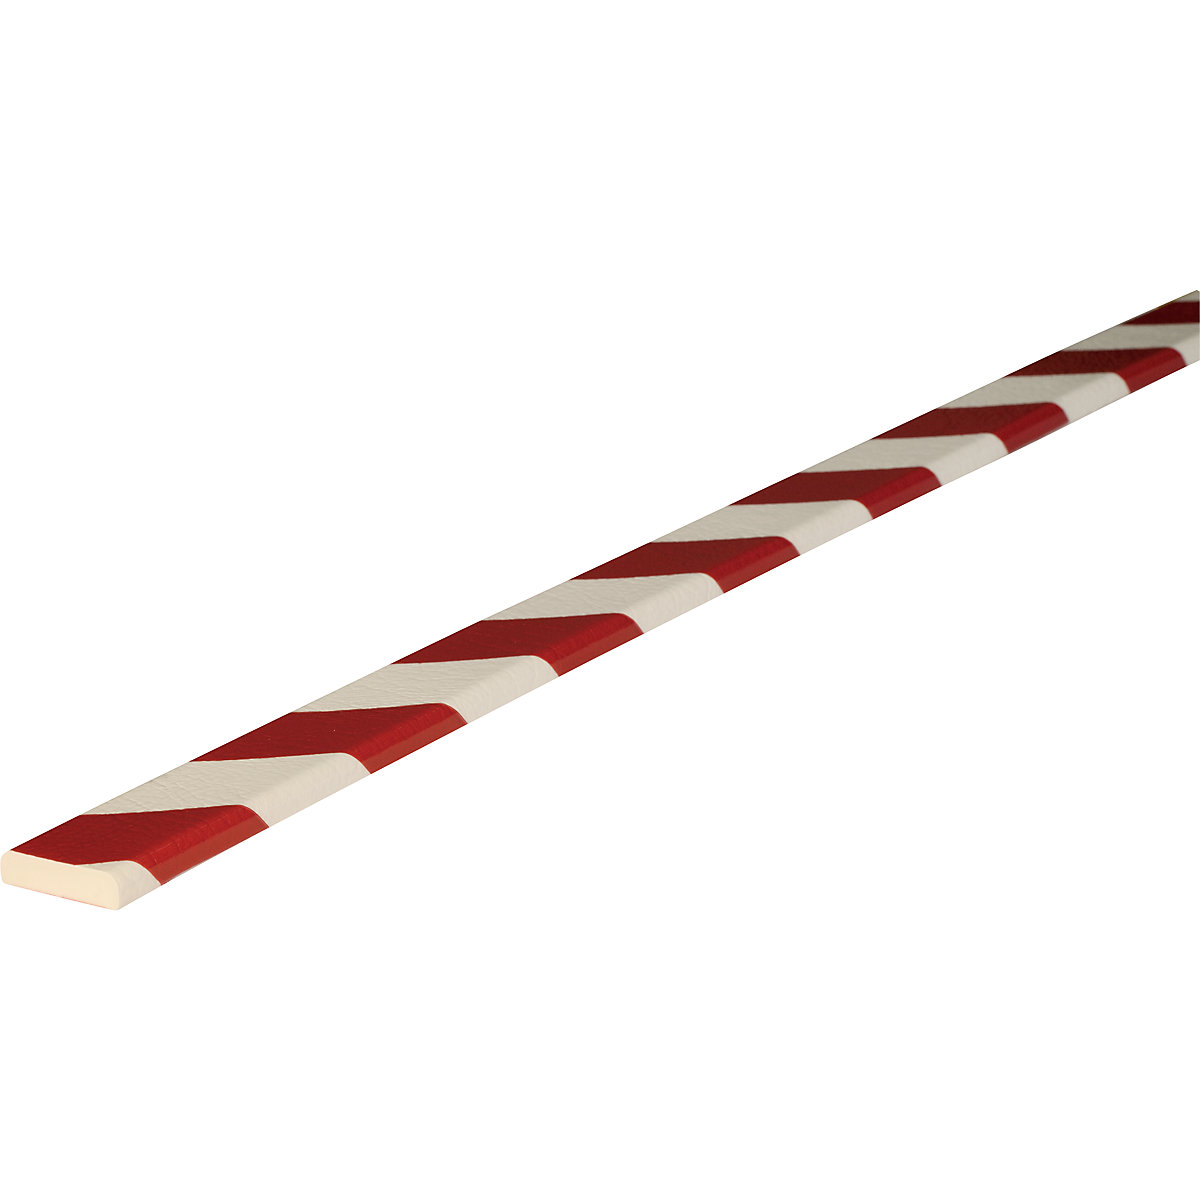 Proteção de superfícies Knuffi® – SHG, tipo F, 1 rolo de 5 m, vermelho/branco-29